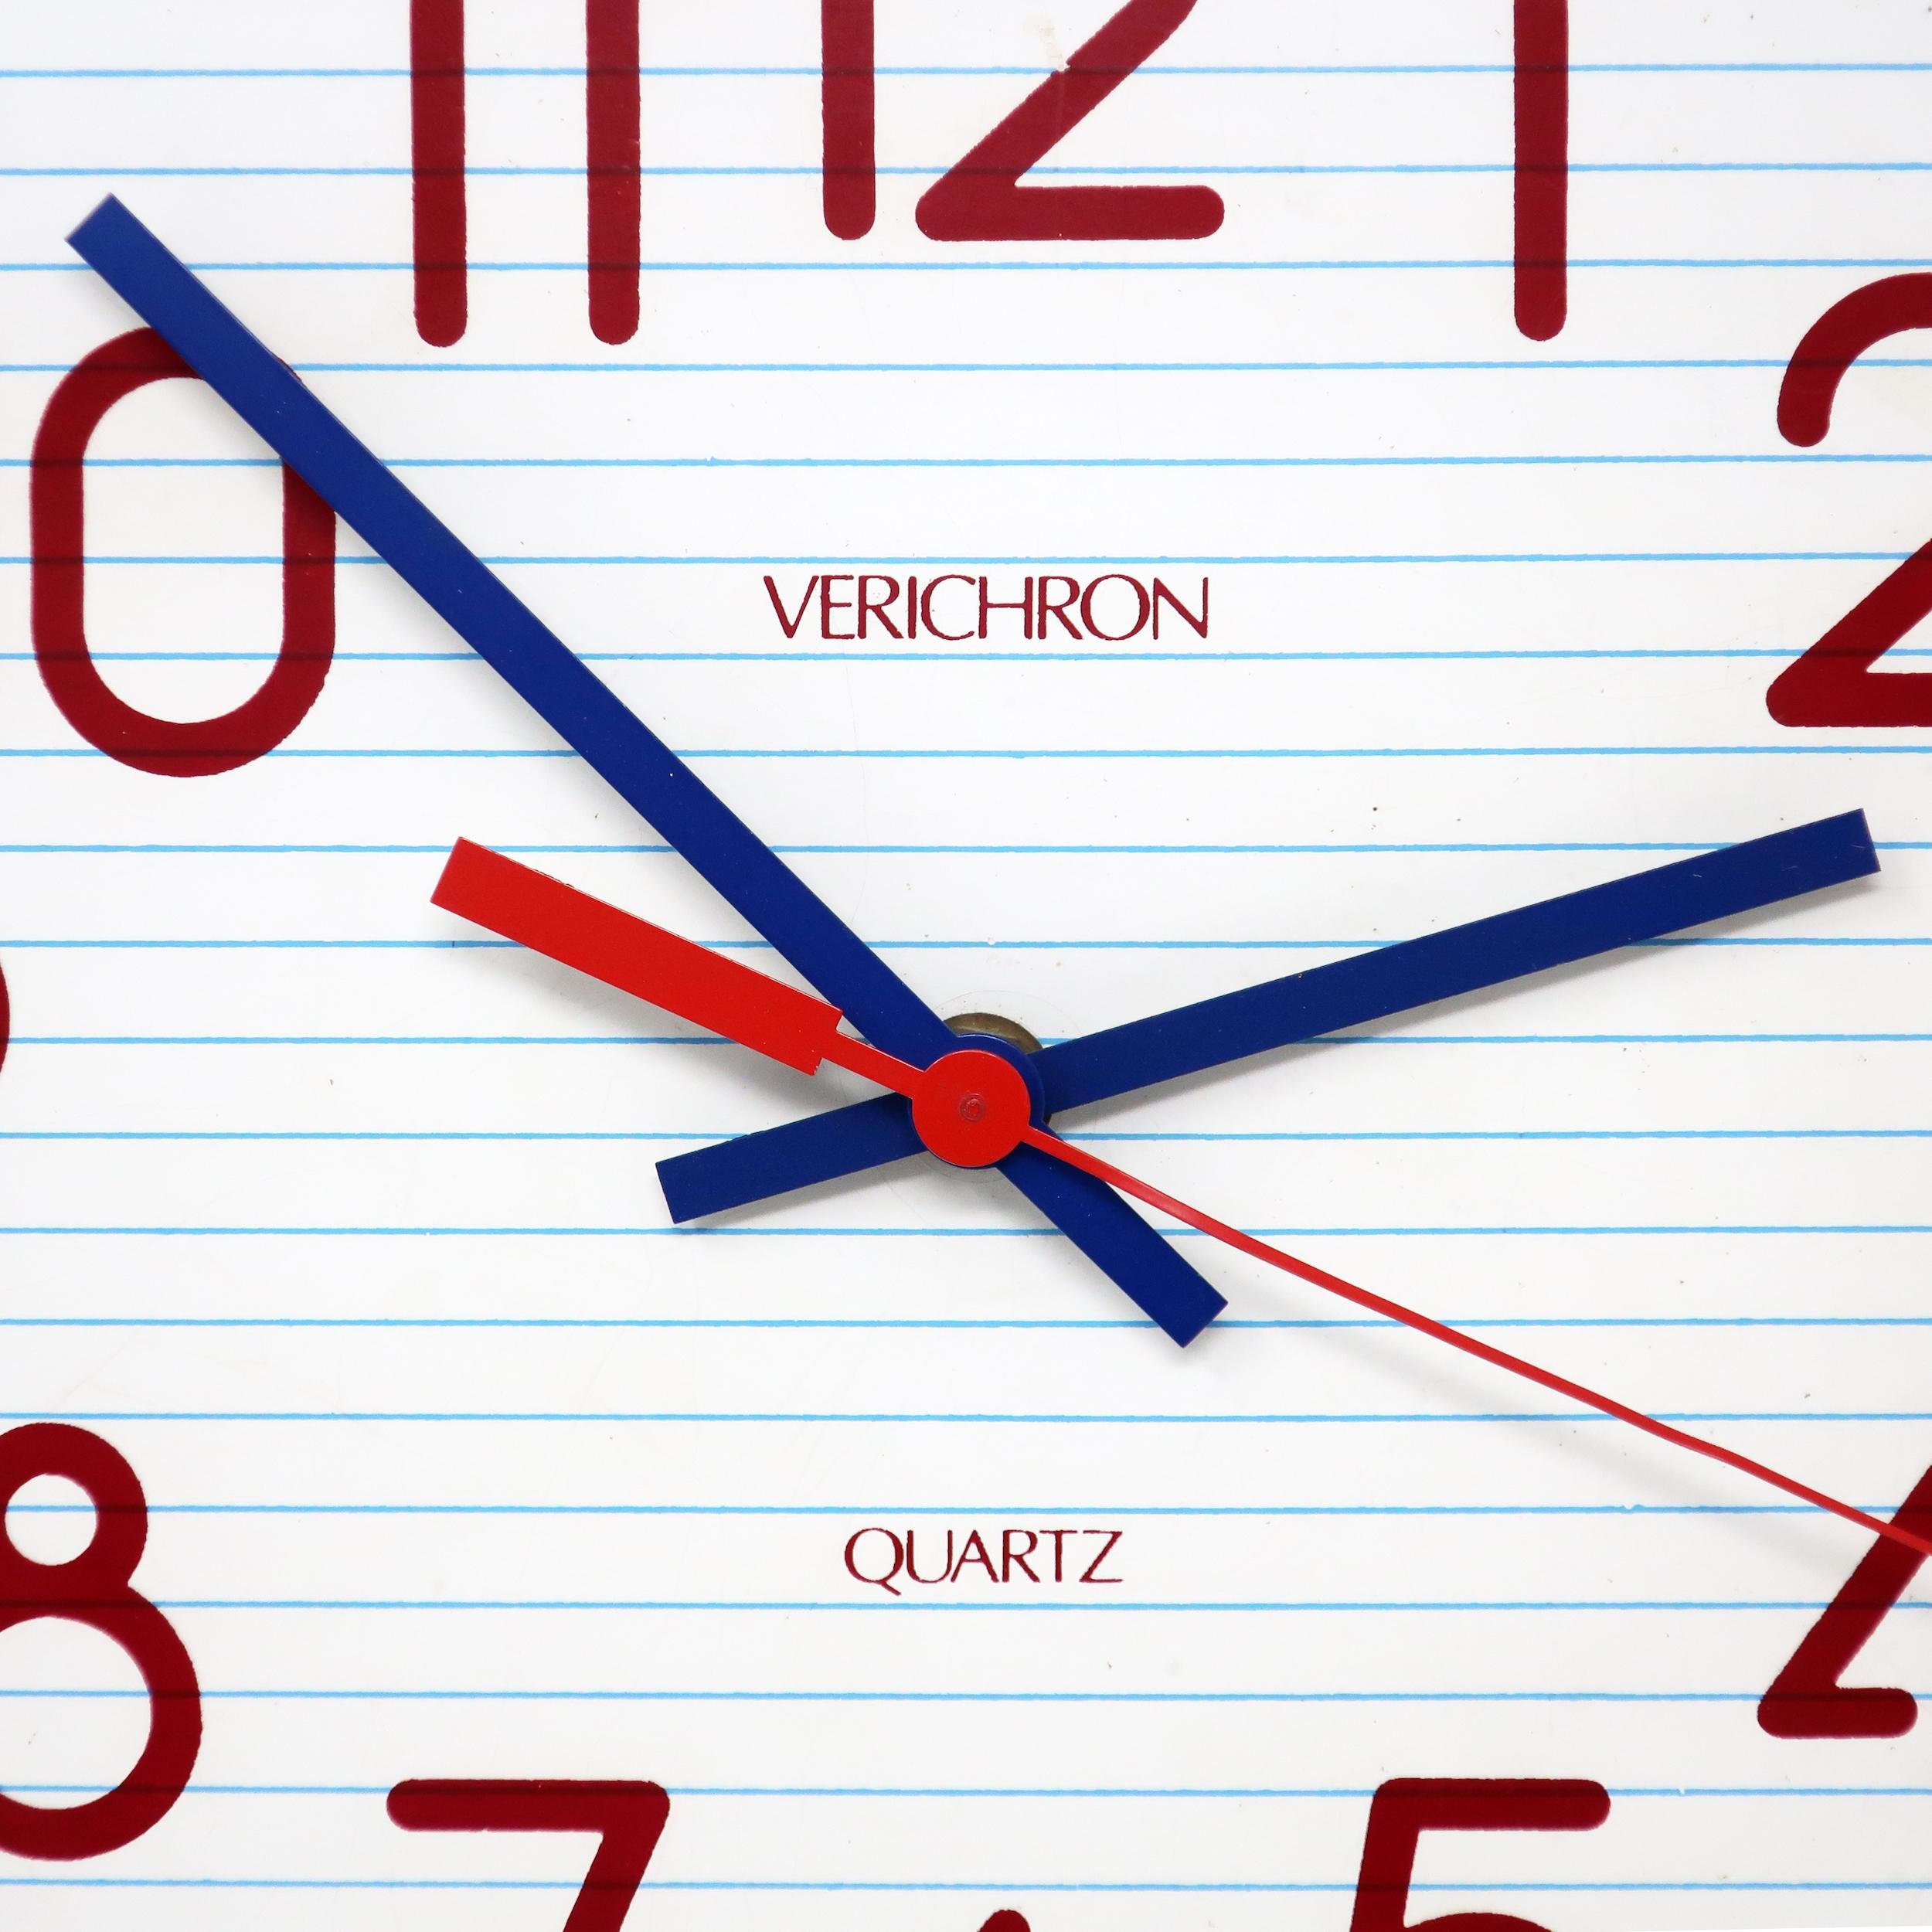 verichron quartz clock